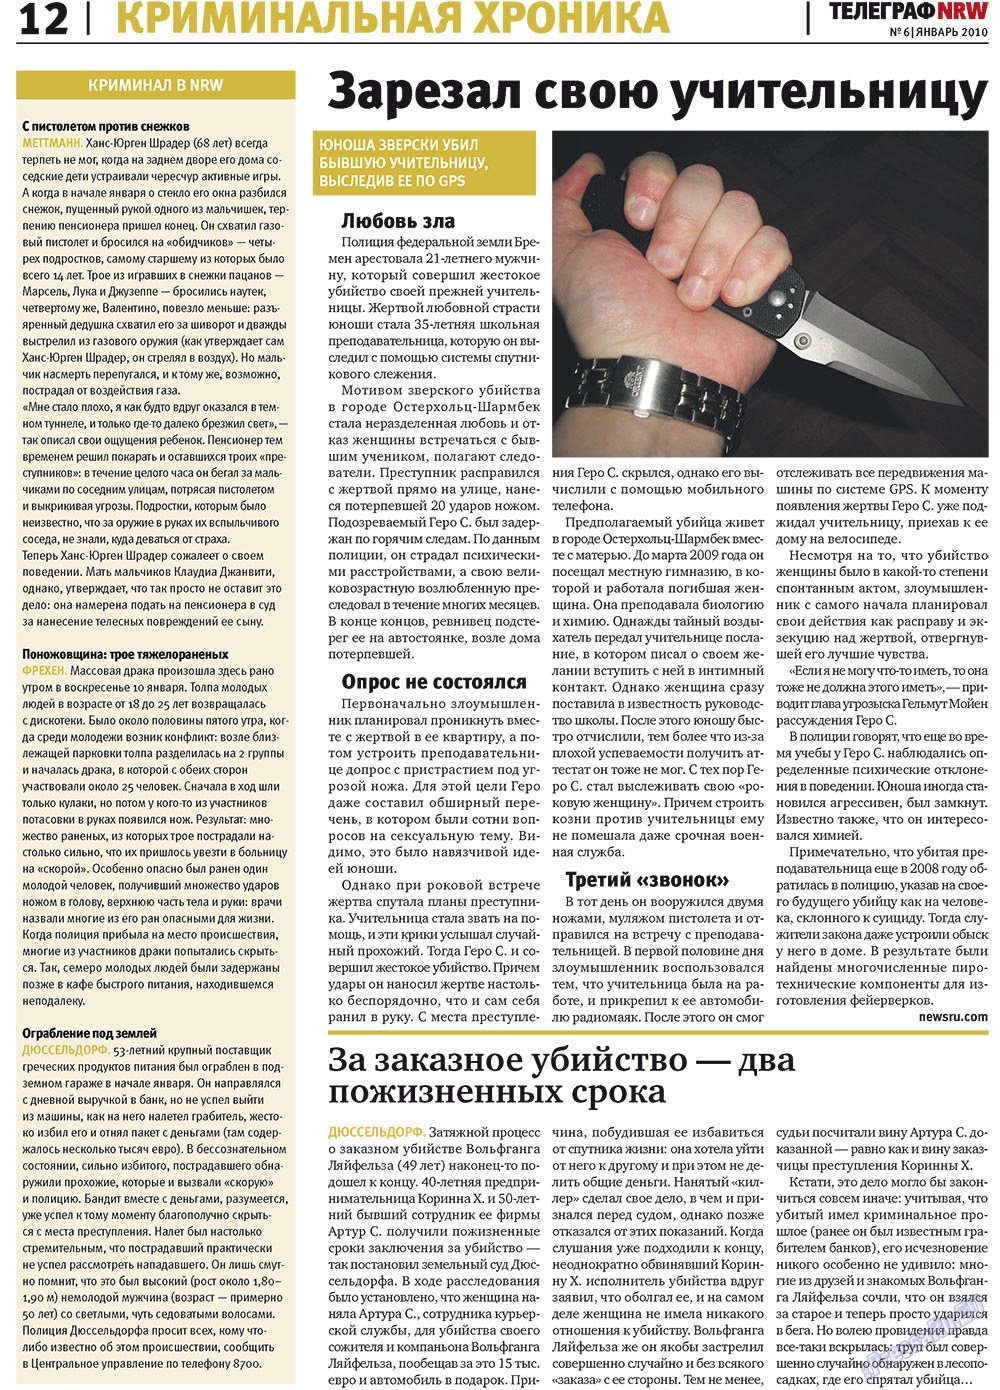 Телеграф NRW (газета). 2010 год, номер 1, стр. 12